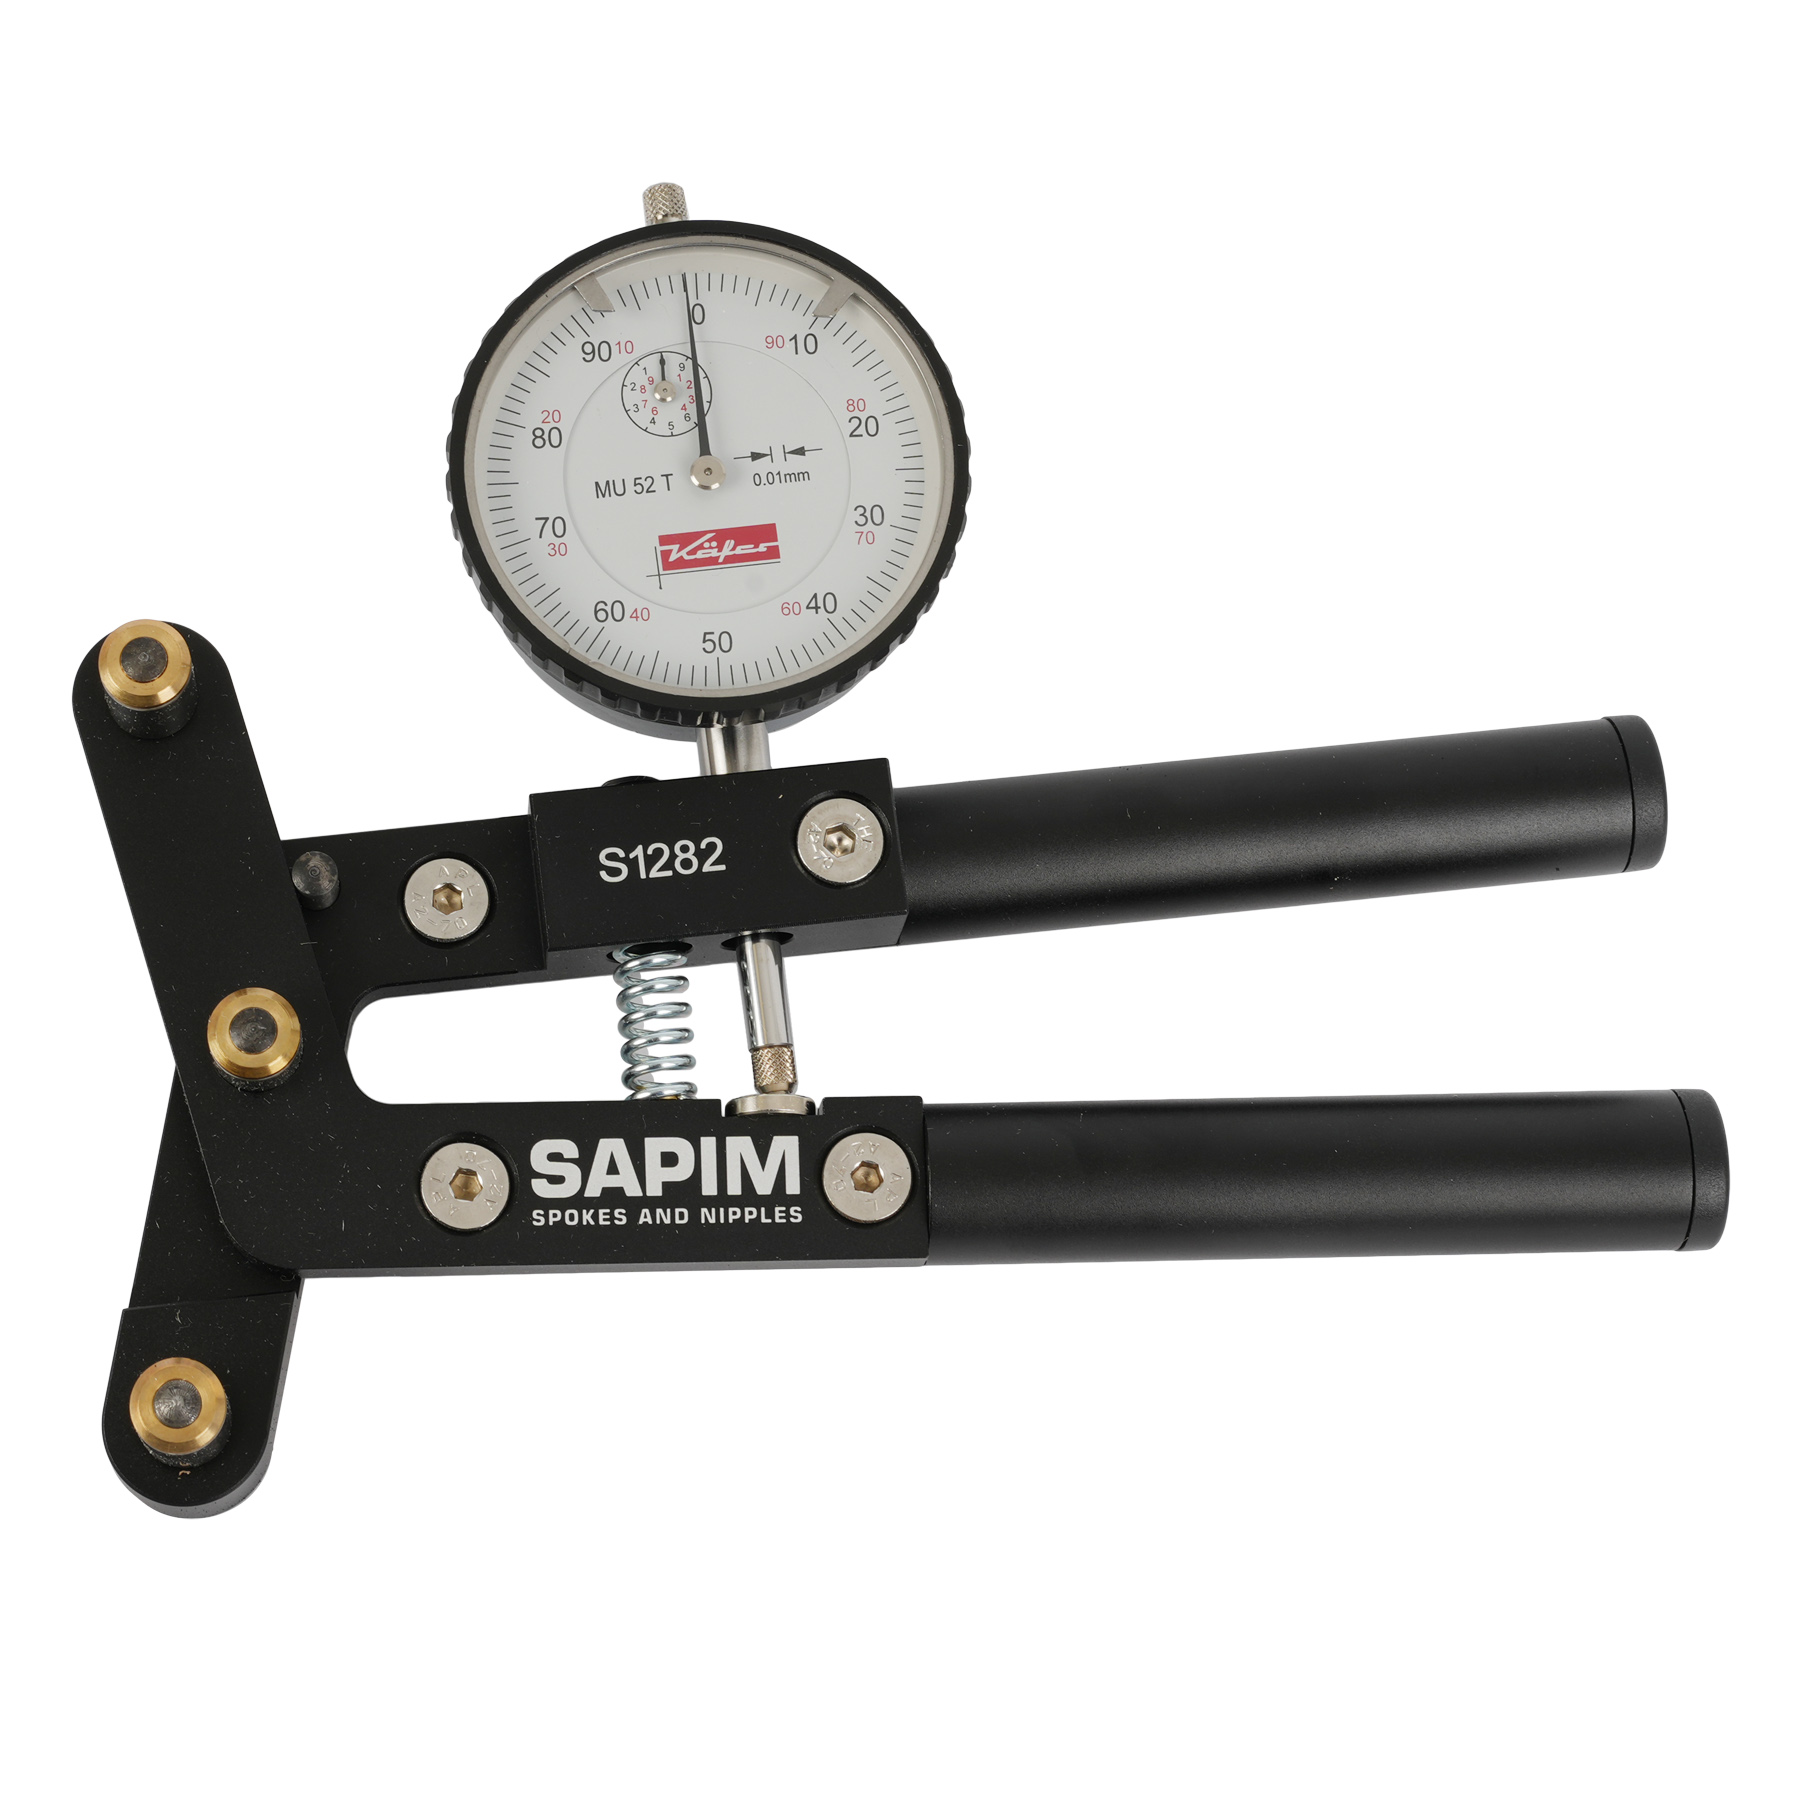 Produktbild von Sapim Spoke Tension Meter Speichentensiometer Analog